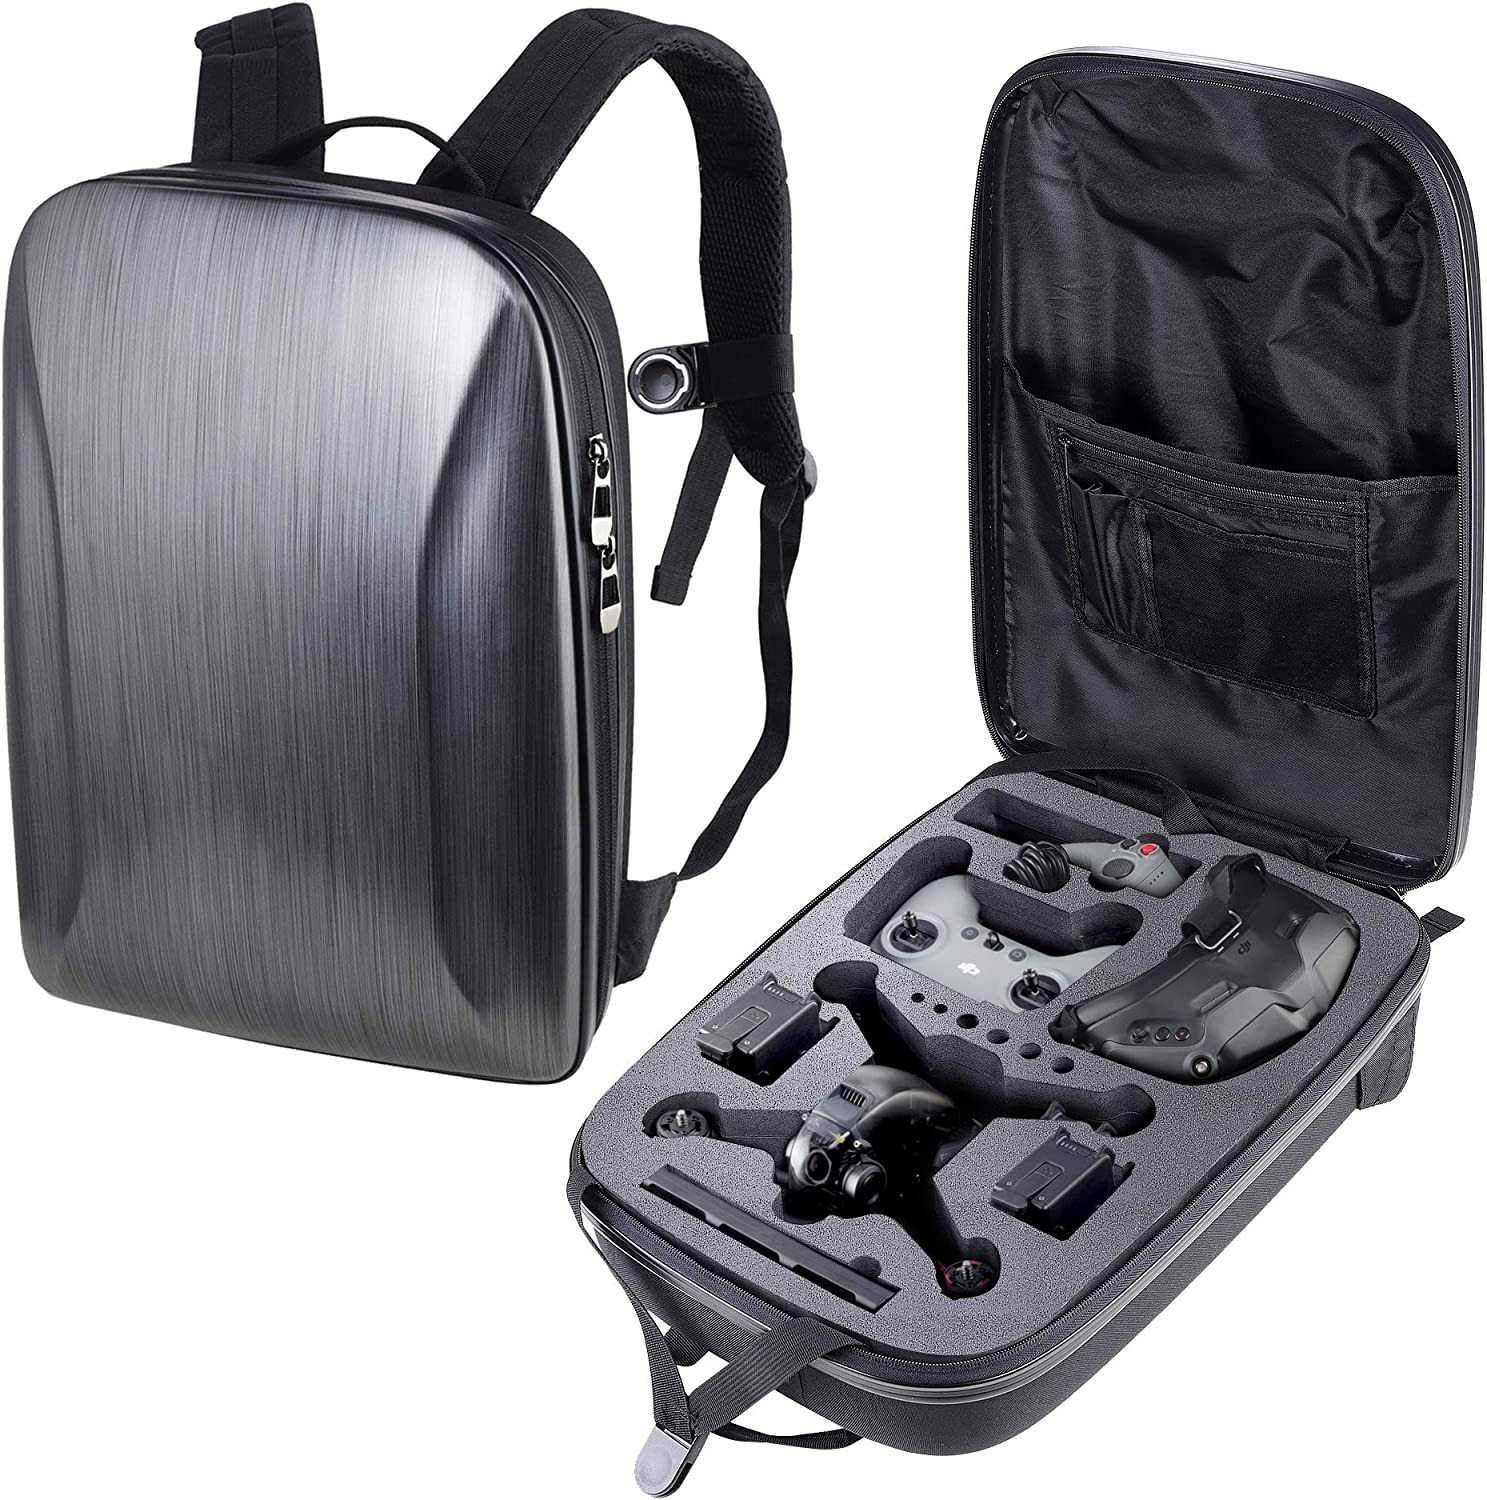 Waterproof Portable Hard Case for DJI FPV Drone